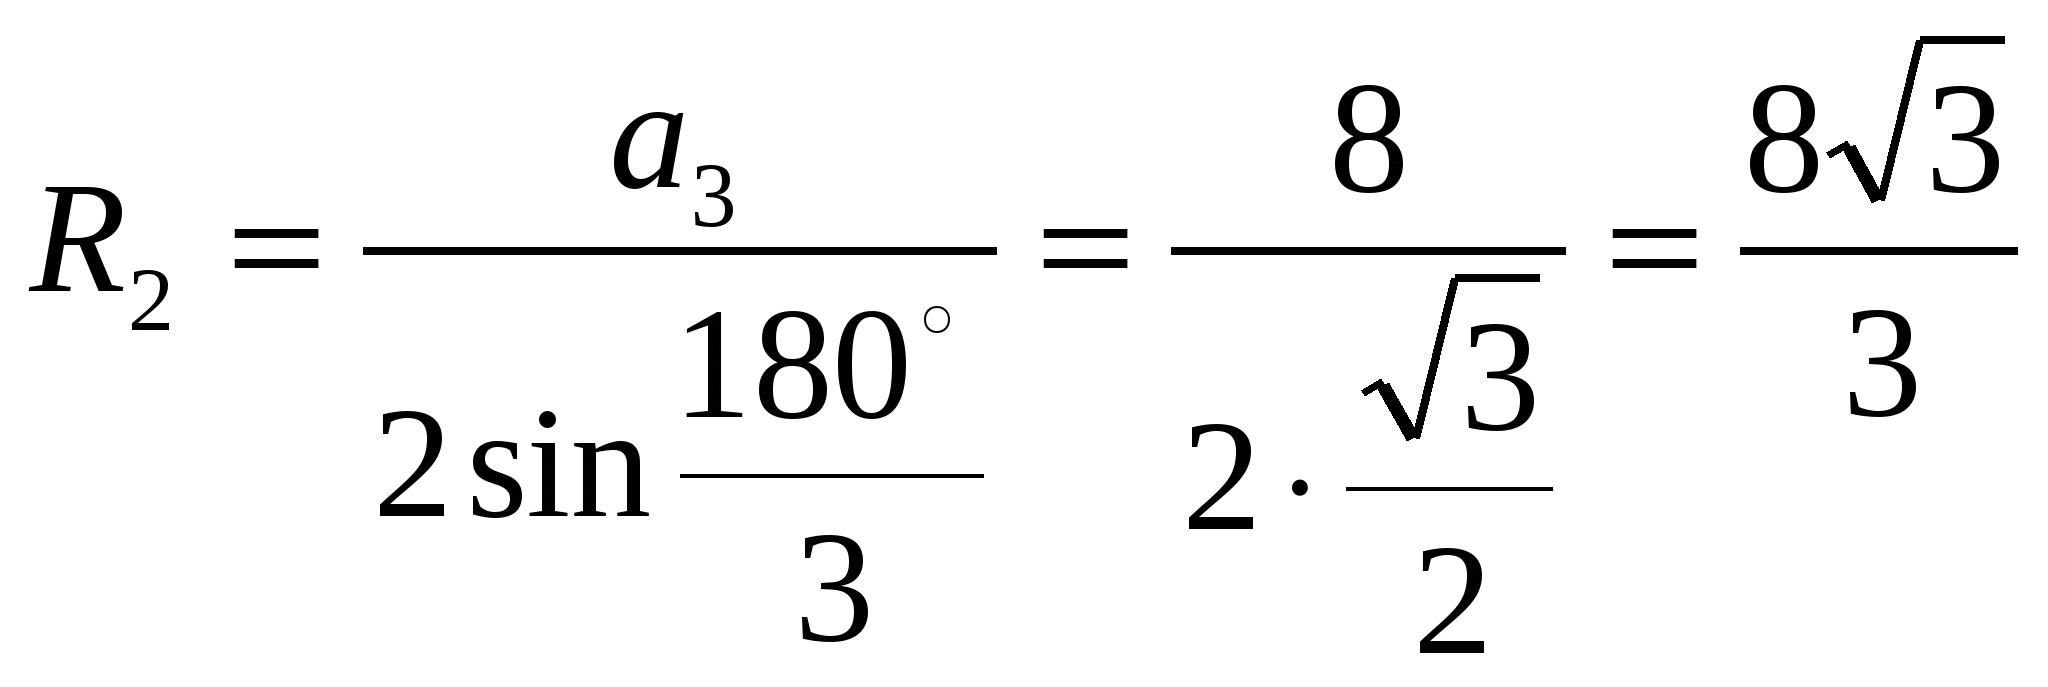 План-конспект урока по математике на тему Формулы для вычисления площади правильного многоугольника и радиуса вписанной окружности